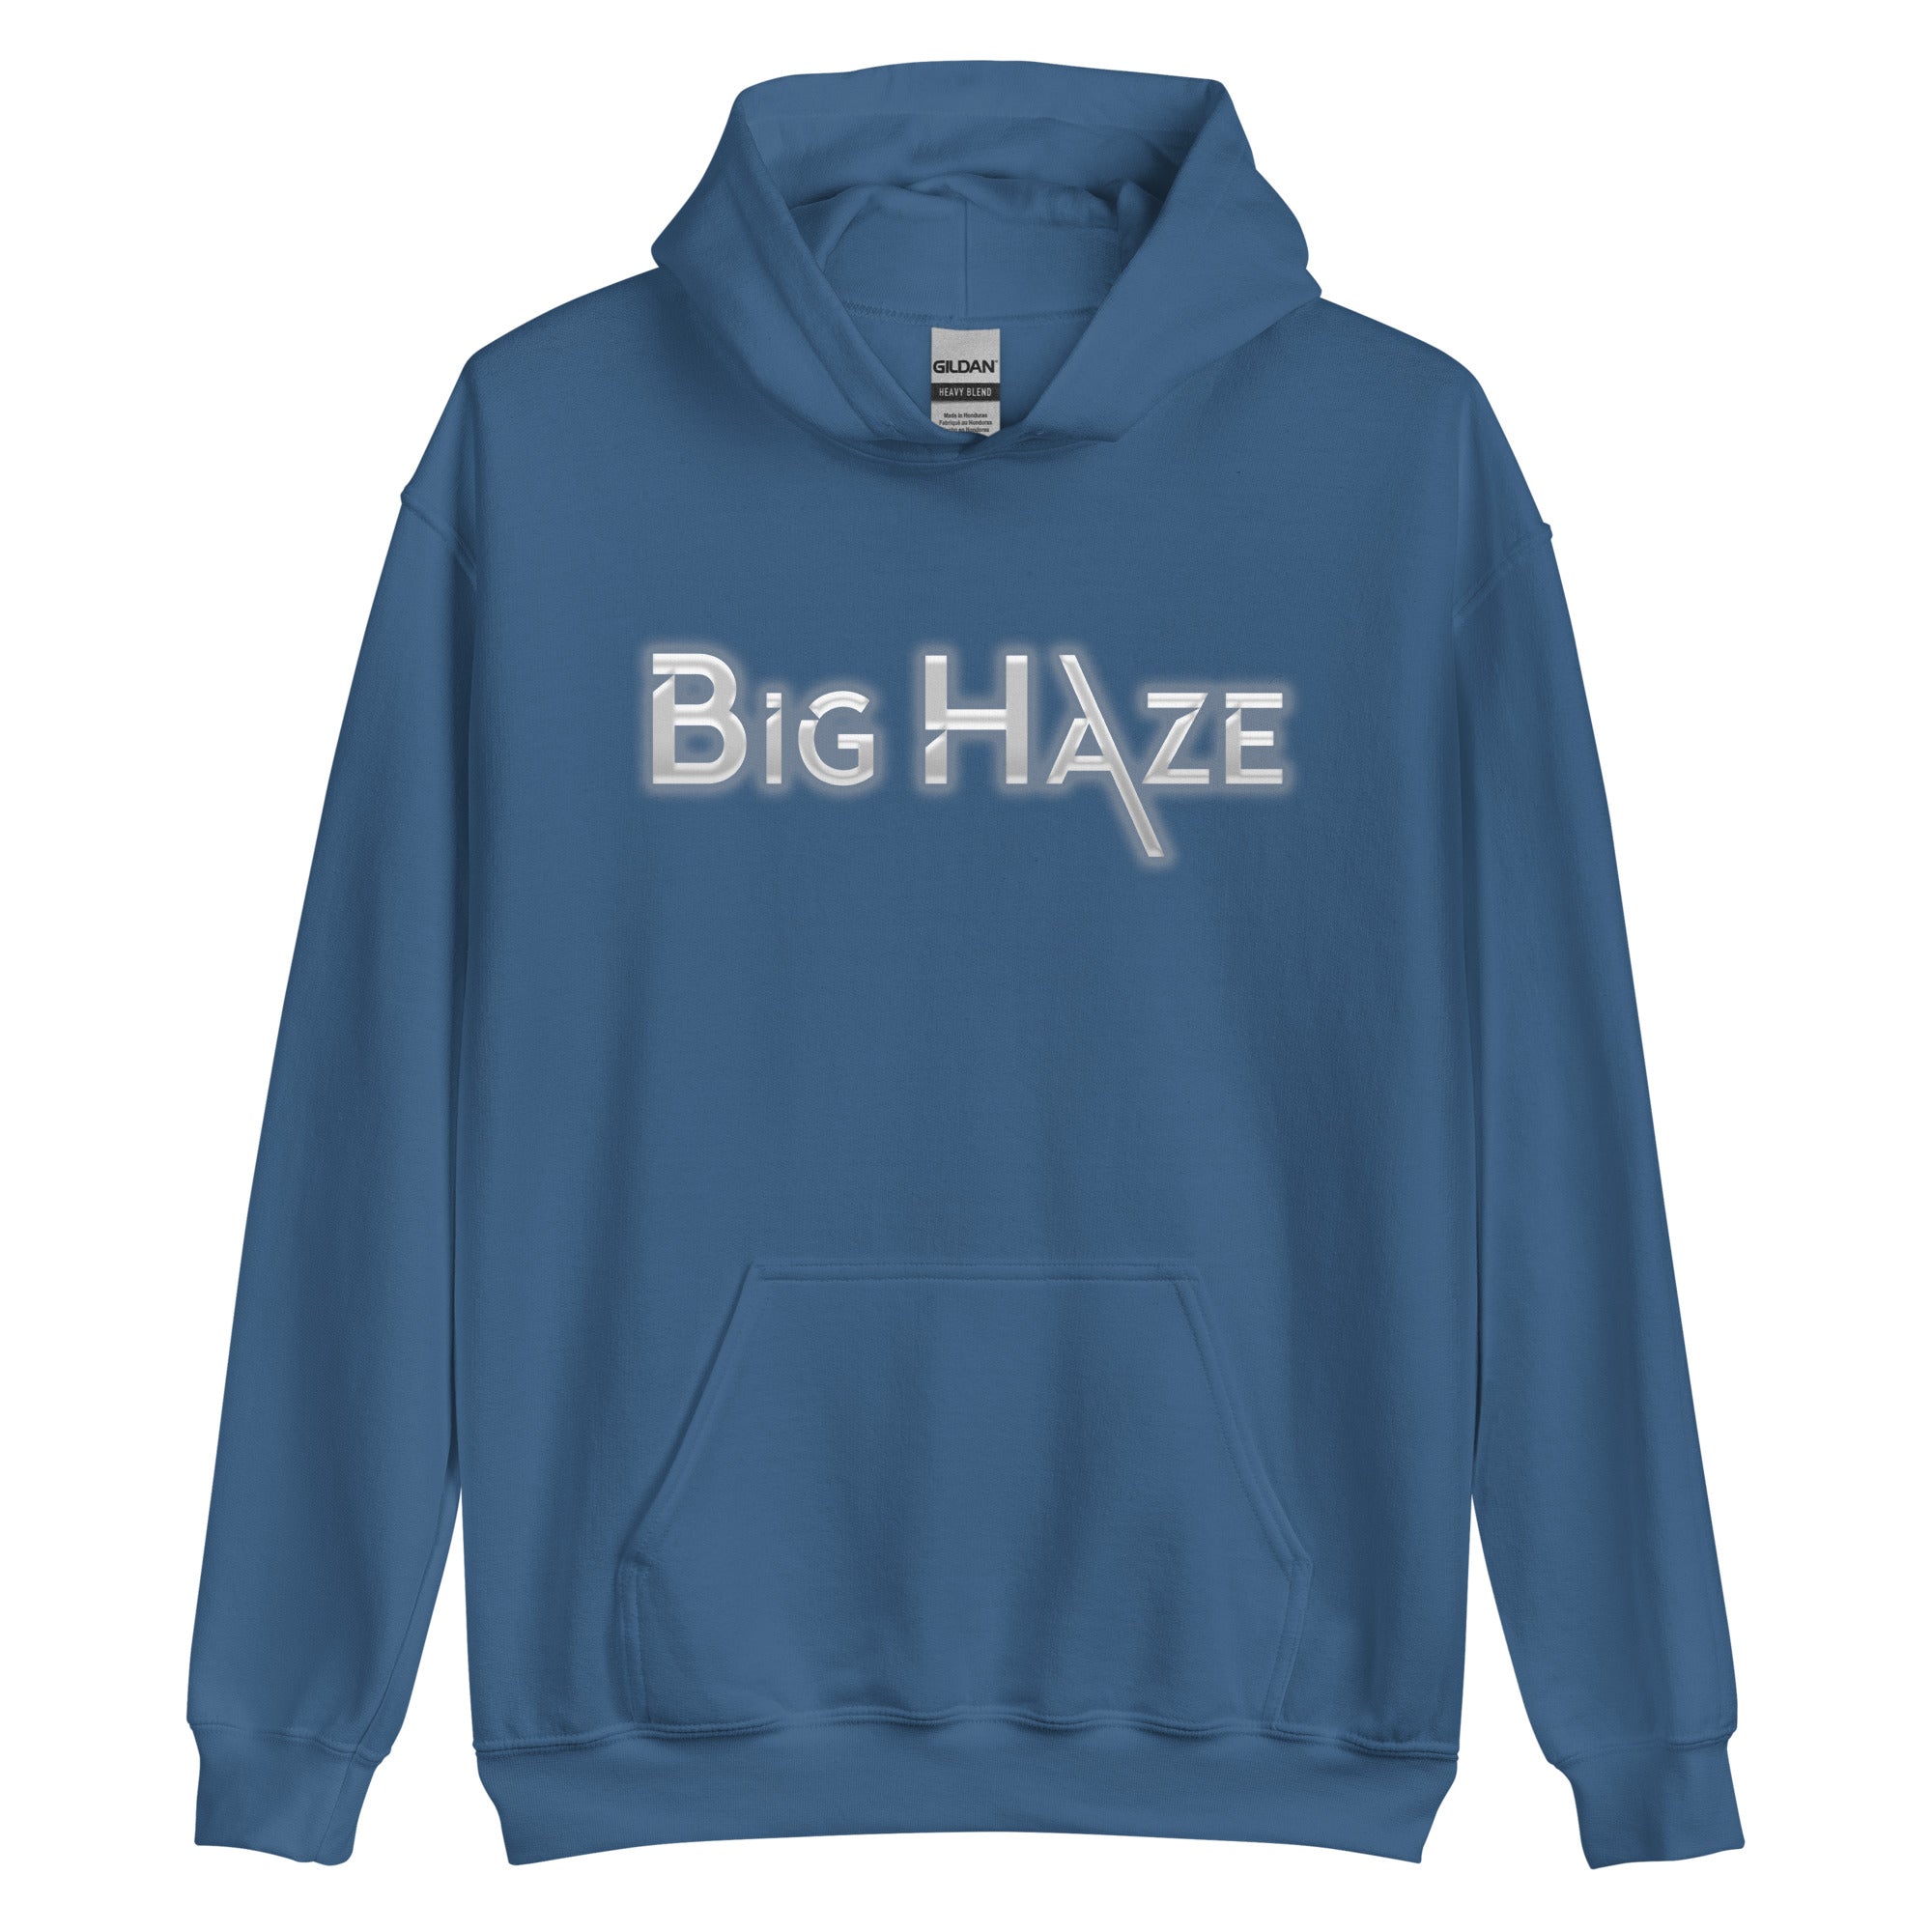 Big Haze - Unisex Hoodie